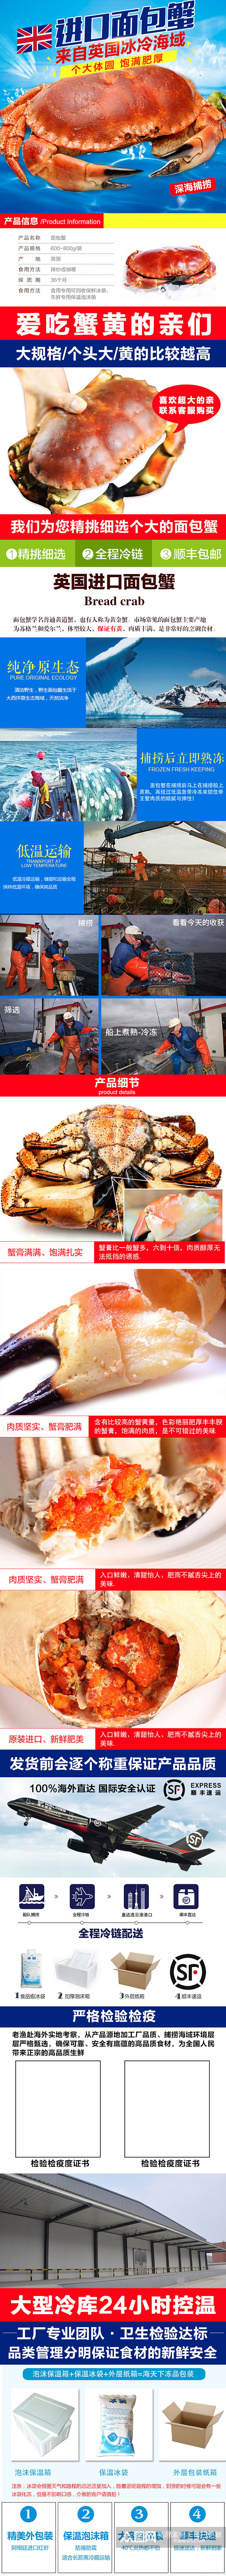 进口面包蟹生鲜海鲜详情页模板素材